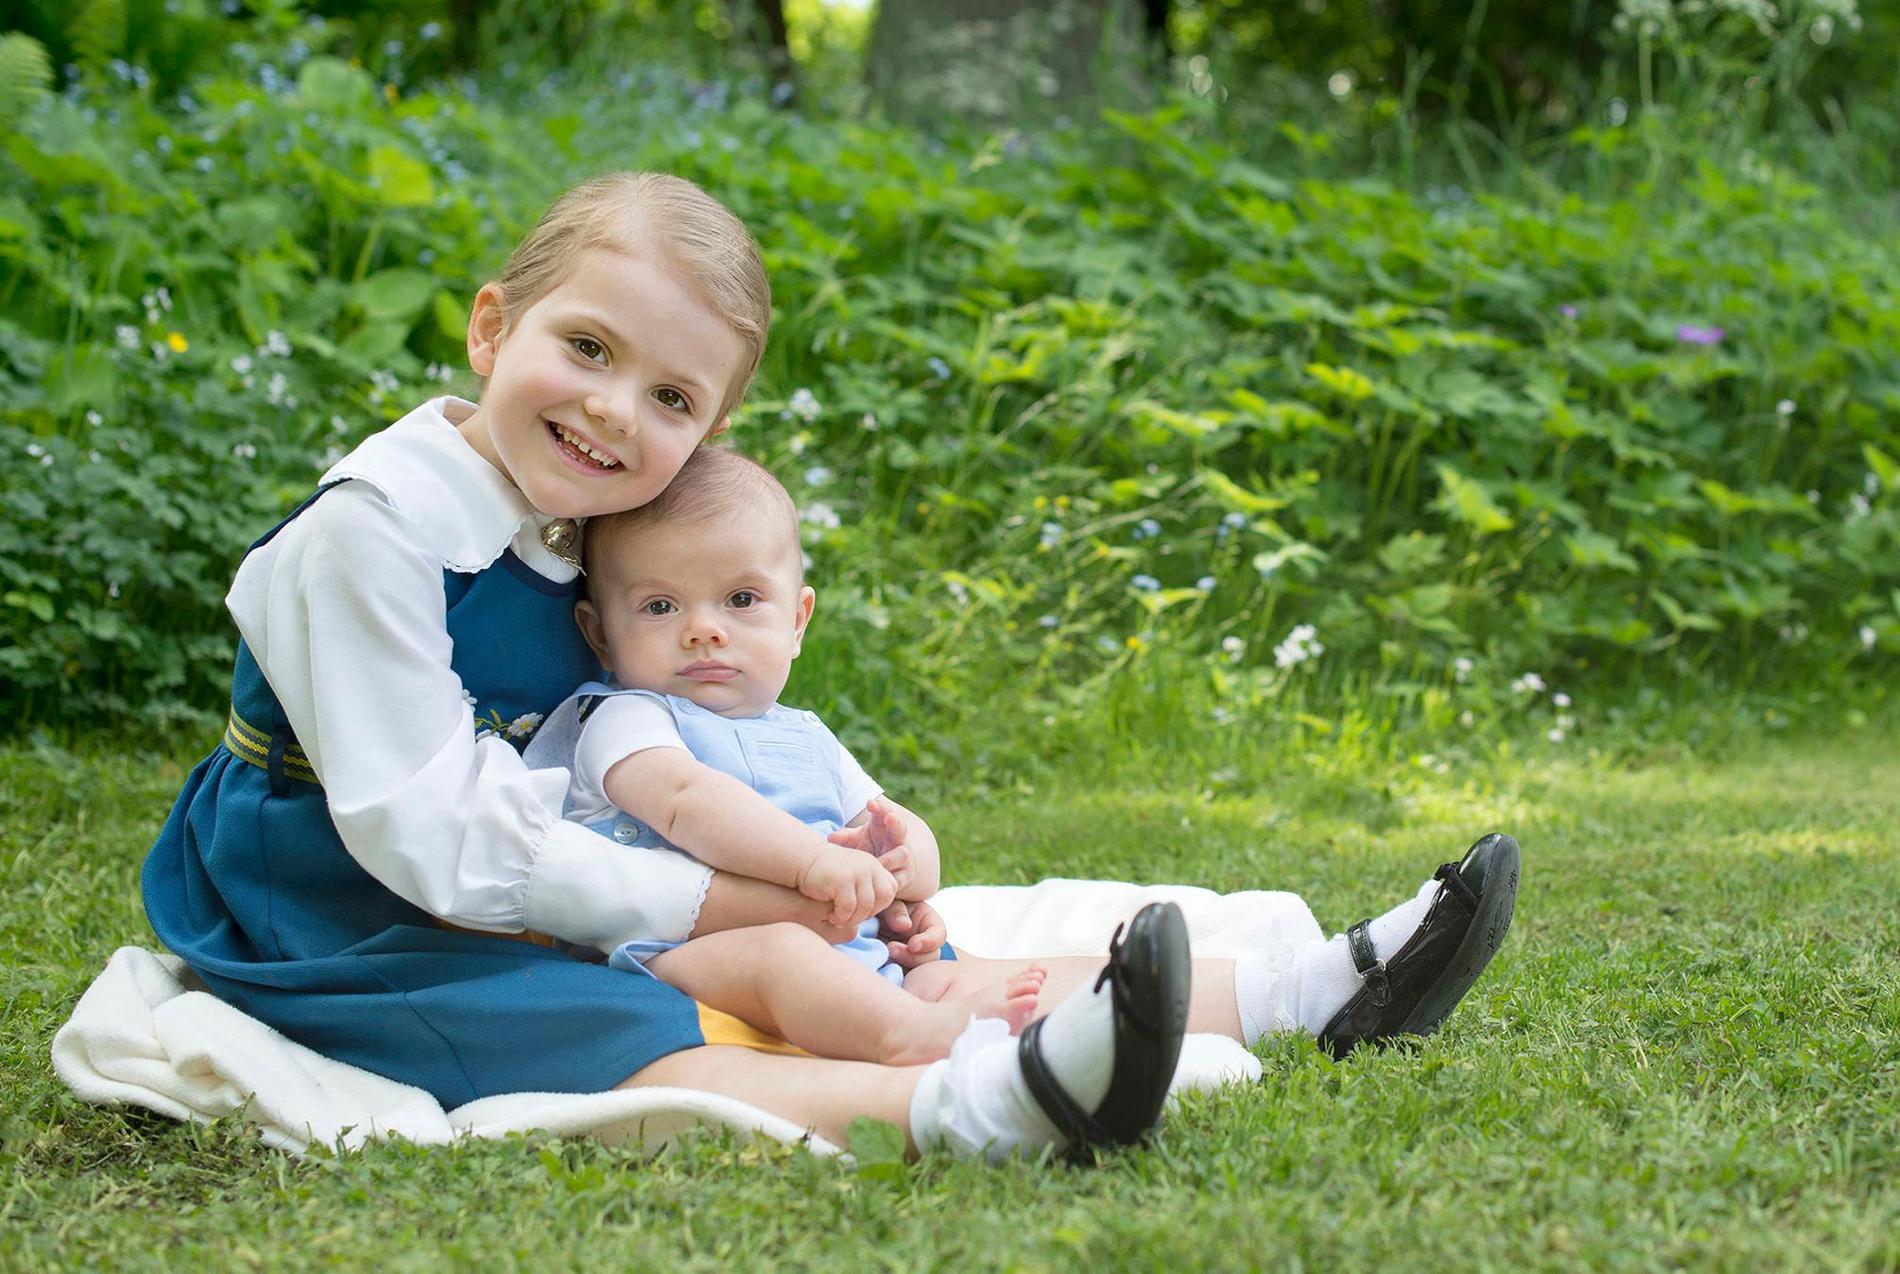 Prinsessan Estelle och lillebror Oscar.